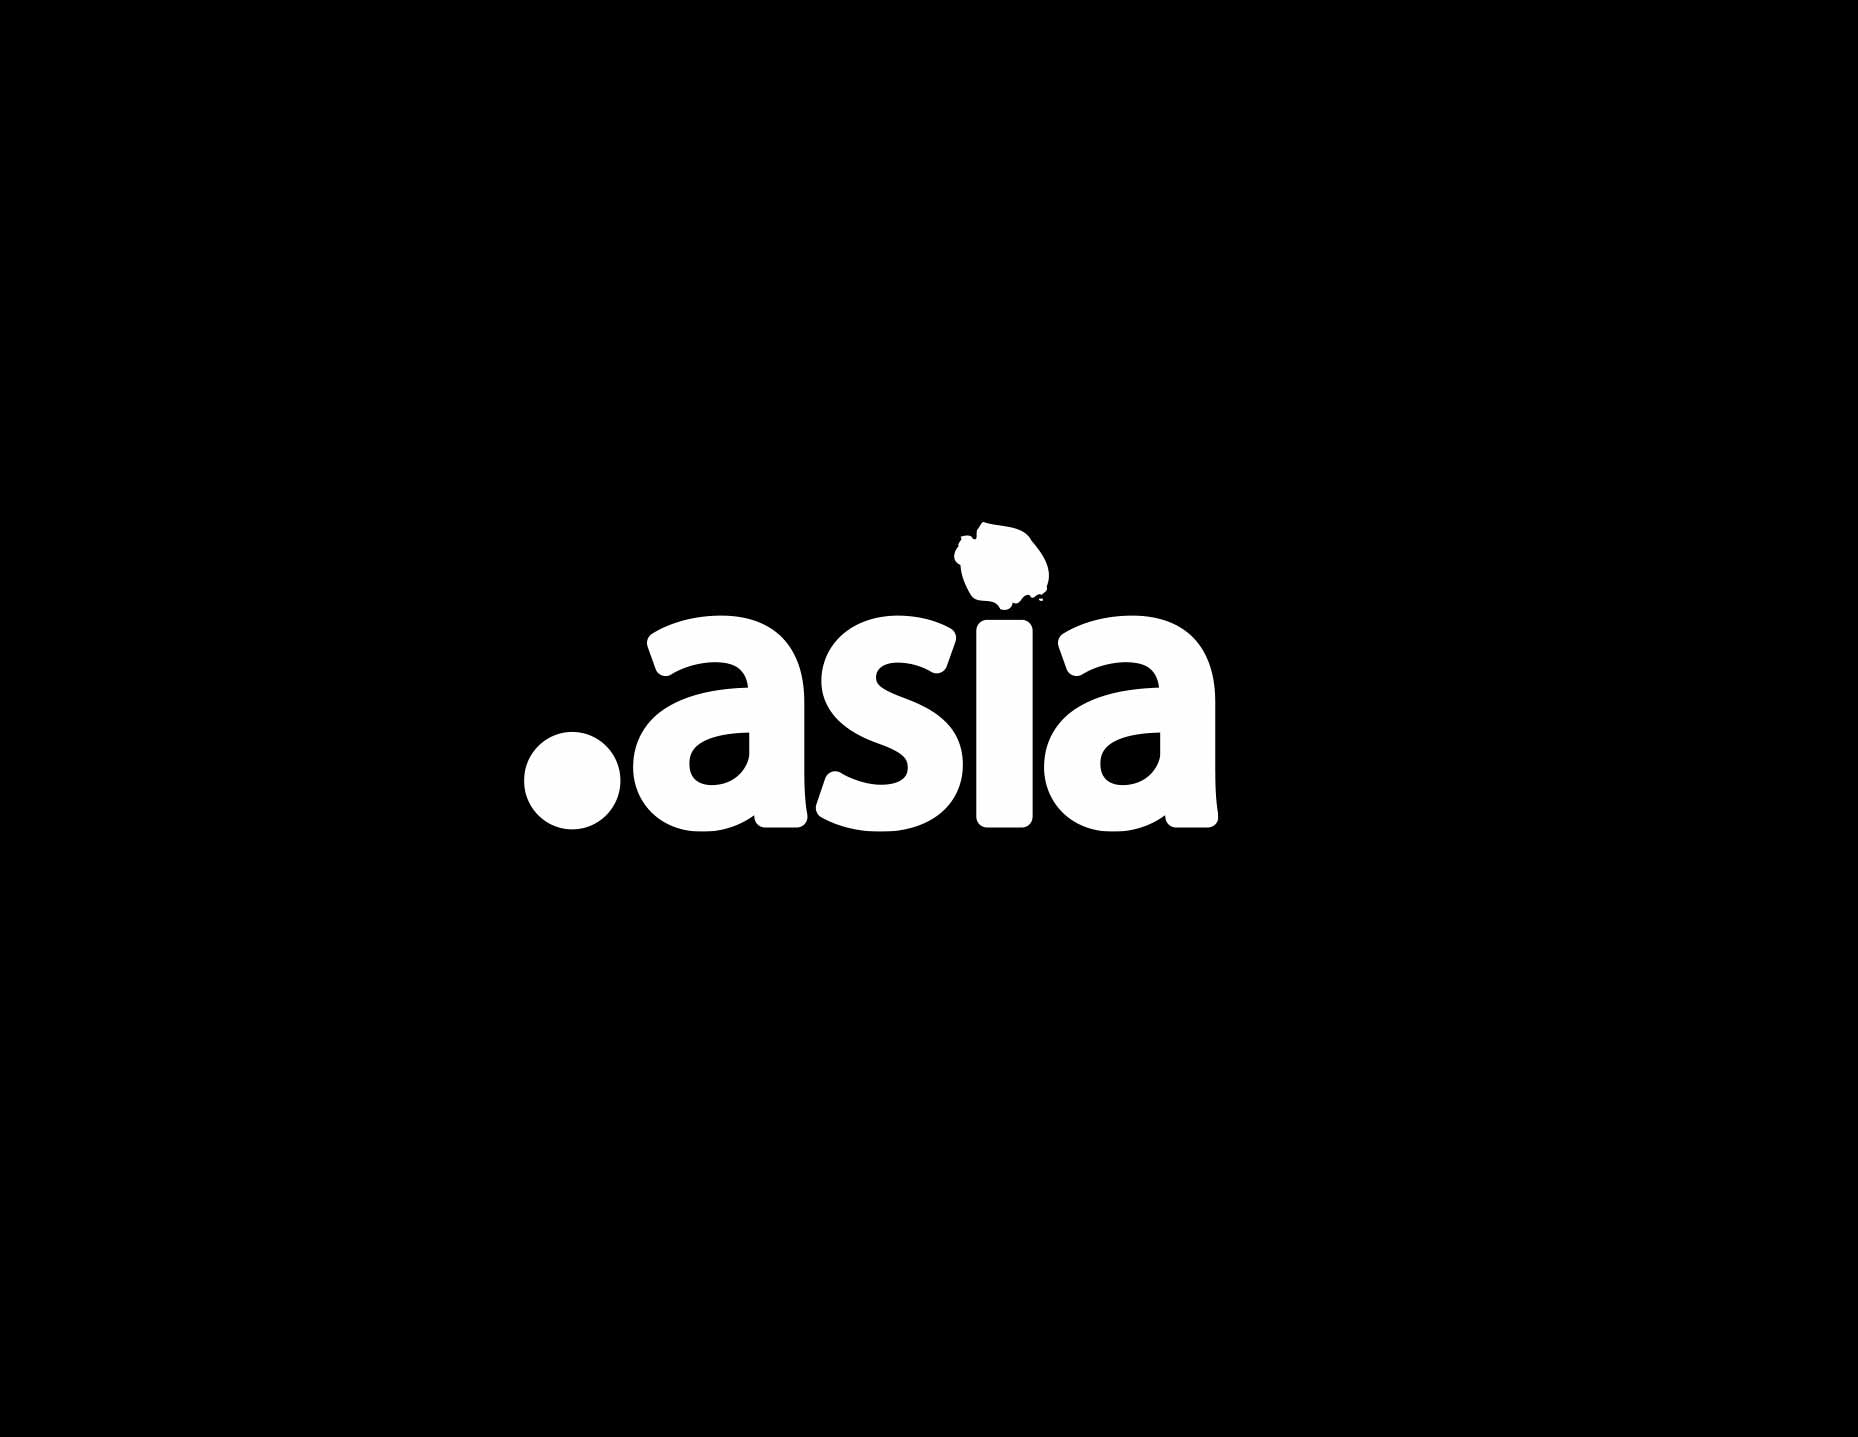 .Asia Logo Wht on Blk